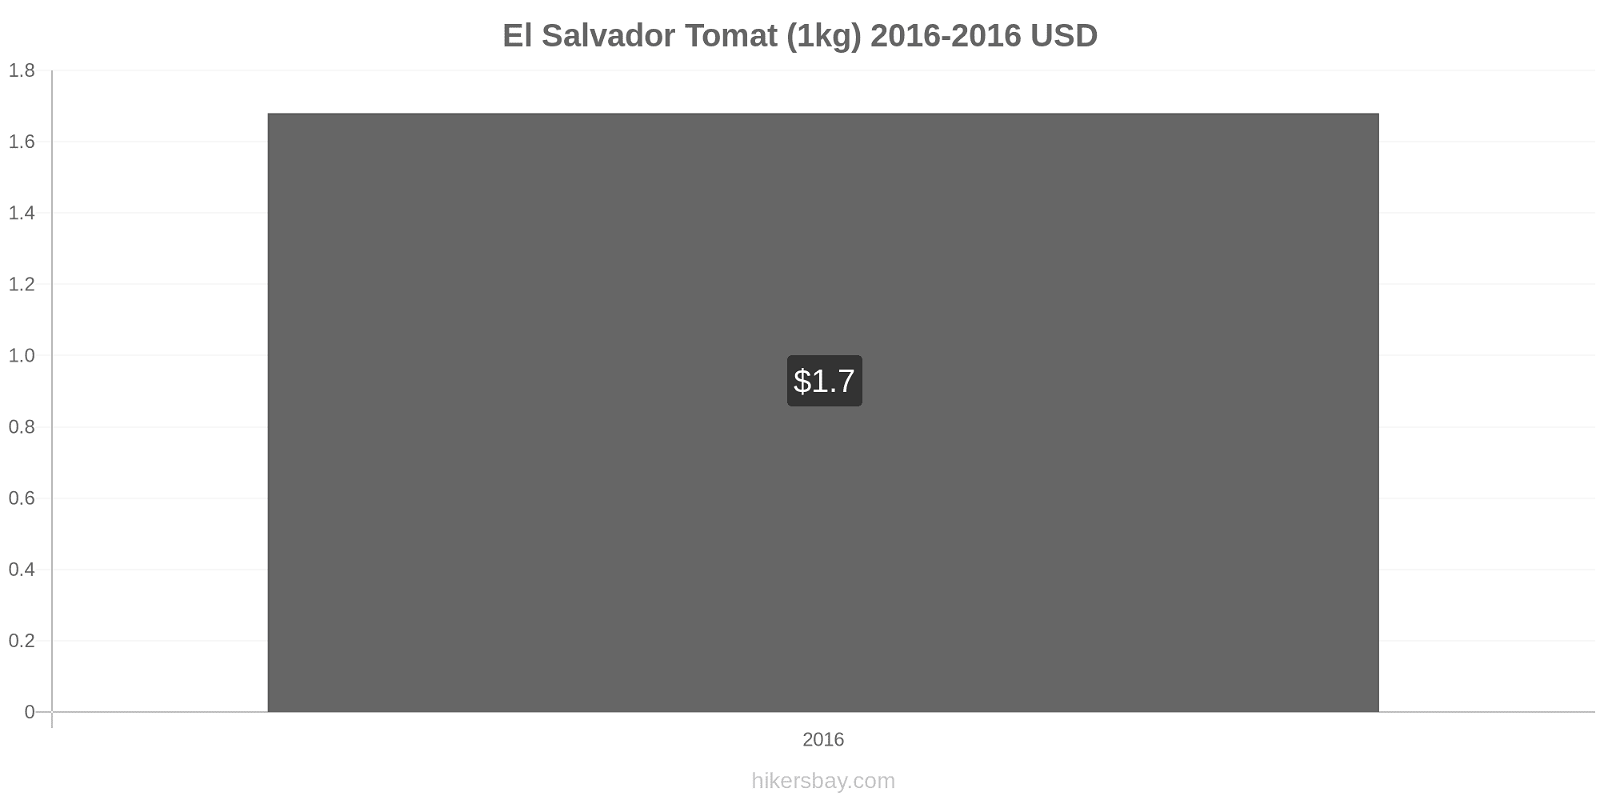 El Salvador perubahan harga Tomat (1kg) hikersbay.com